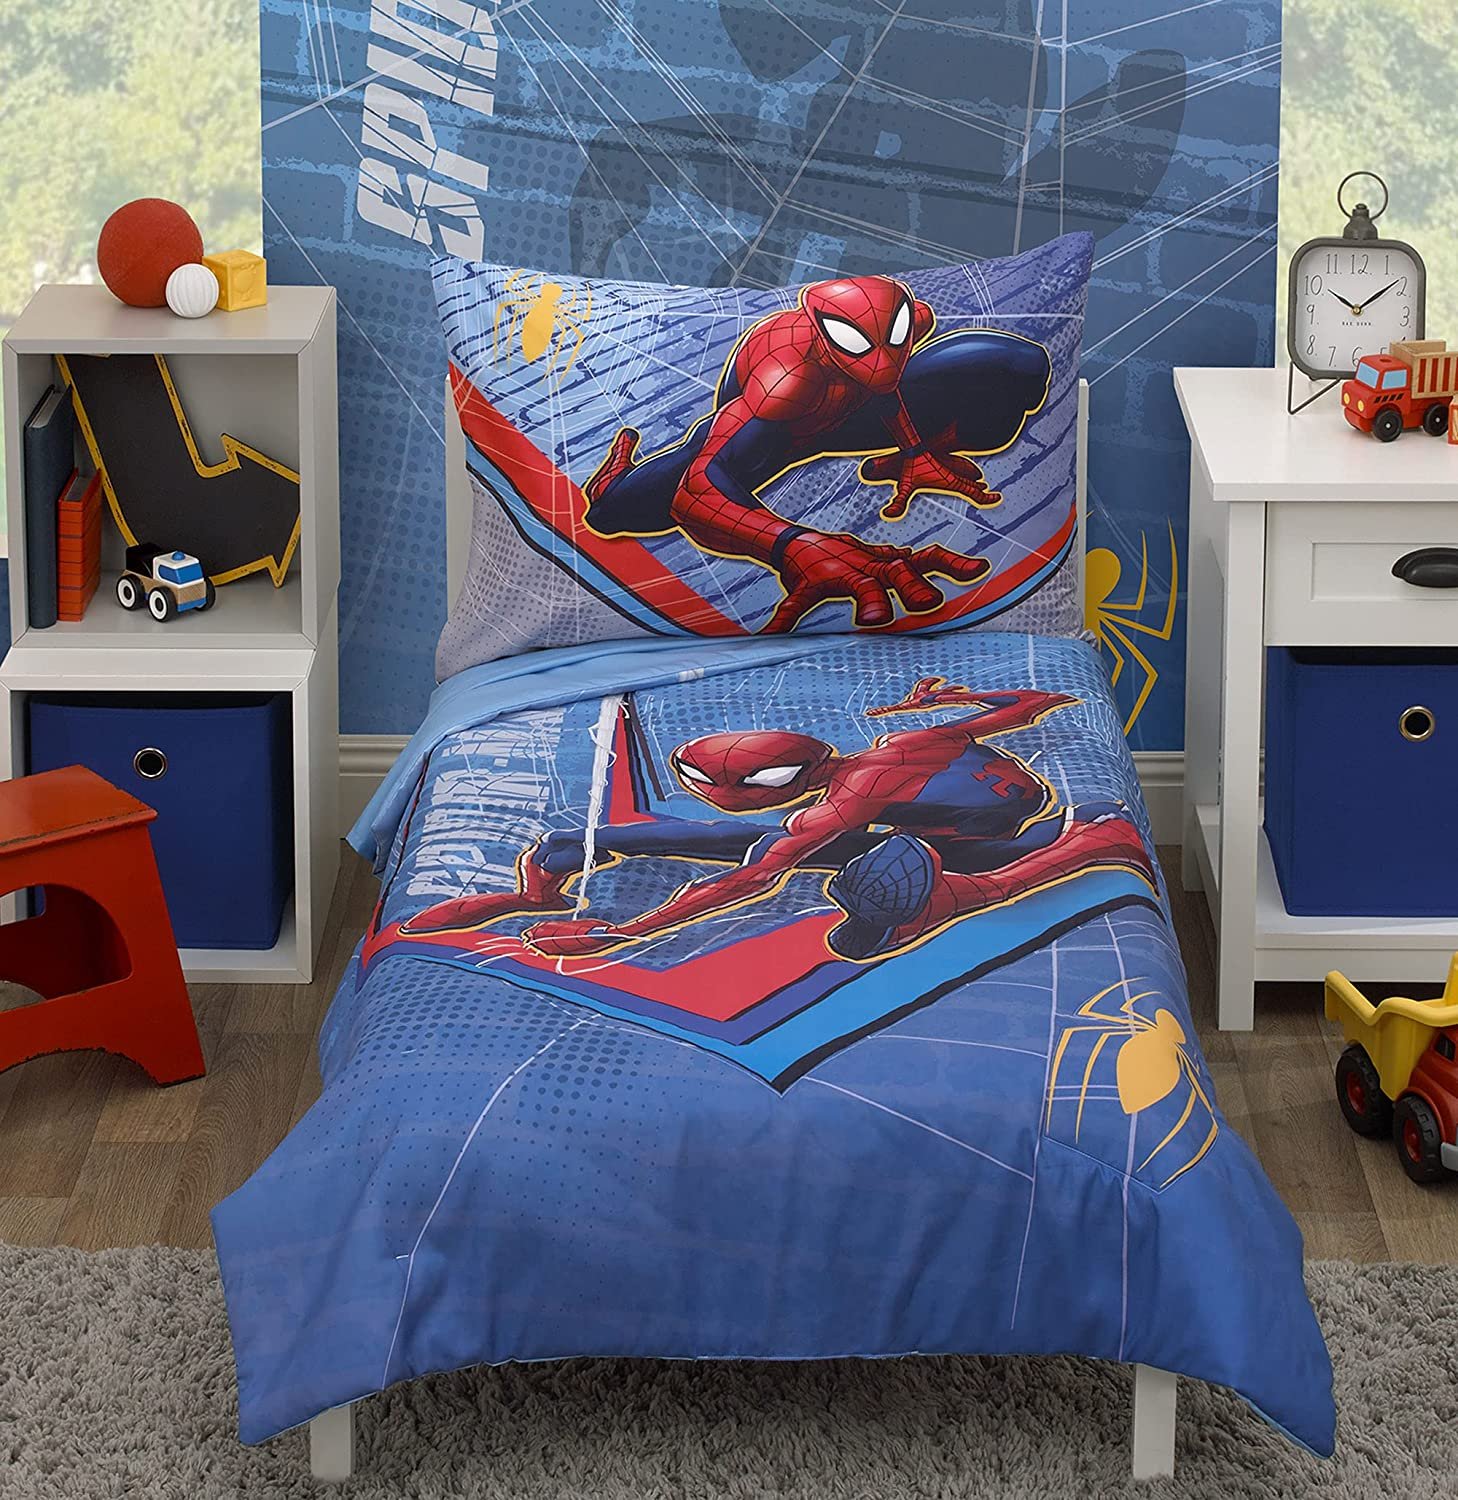 Marvel Spiderman 4 Piece Toddler Bedding Set - image 1 of 7